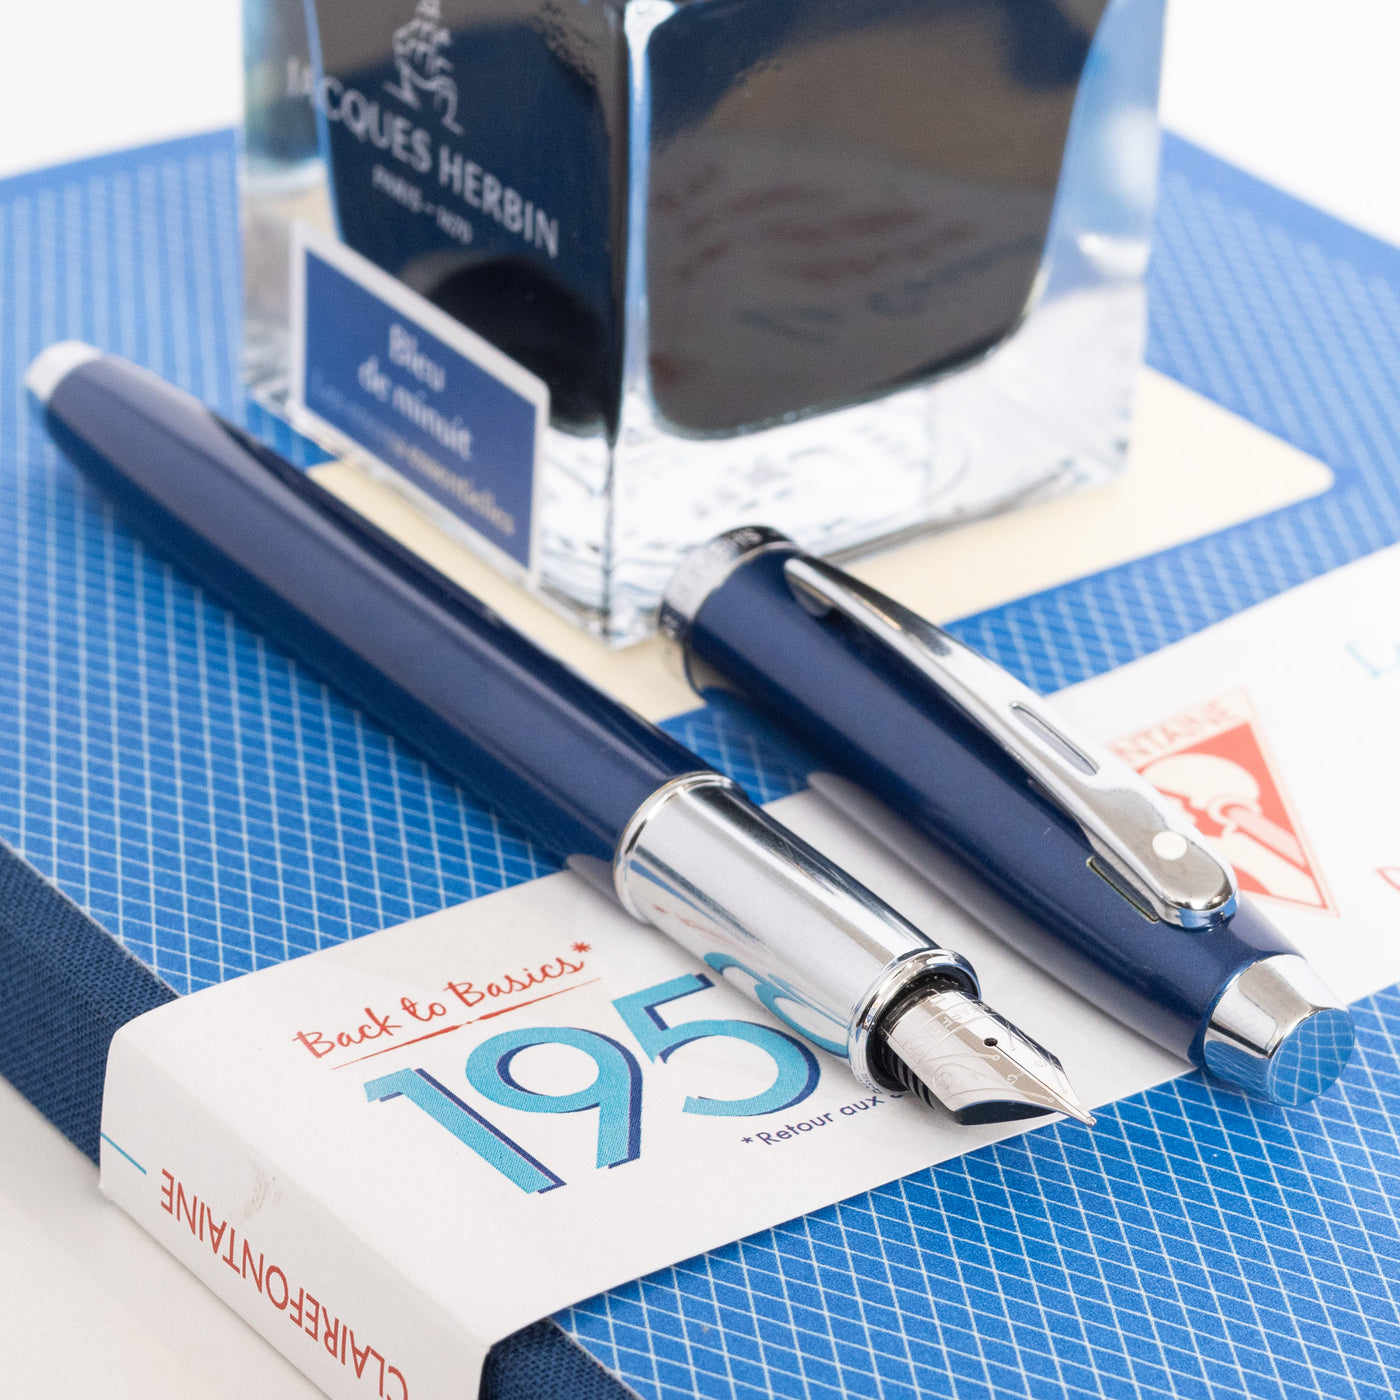  Sheaffer 100 Fountain Pen - Glossy Blue chrome trim